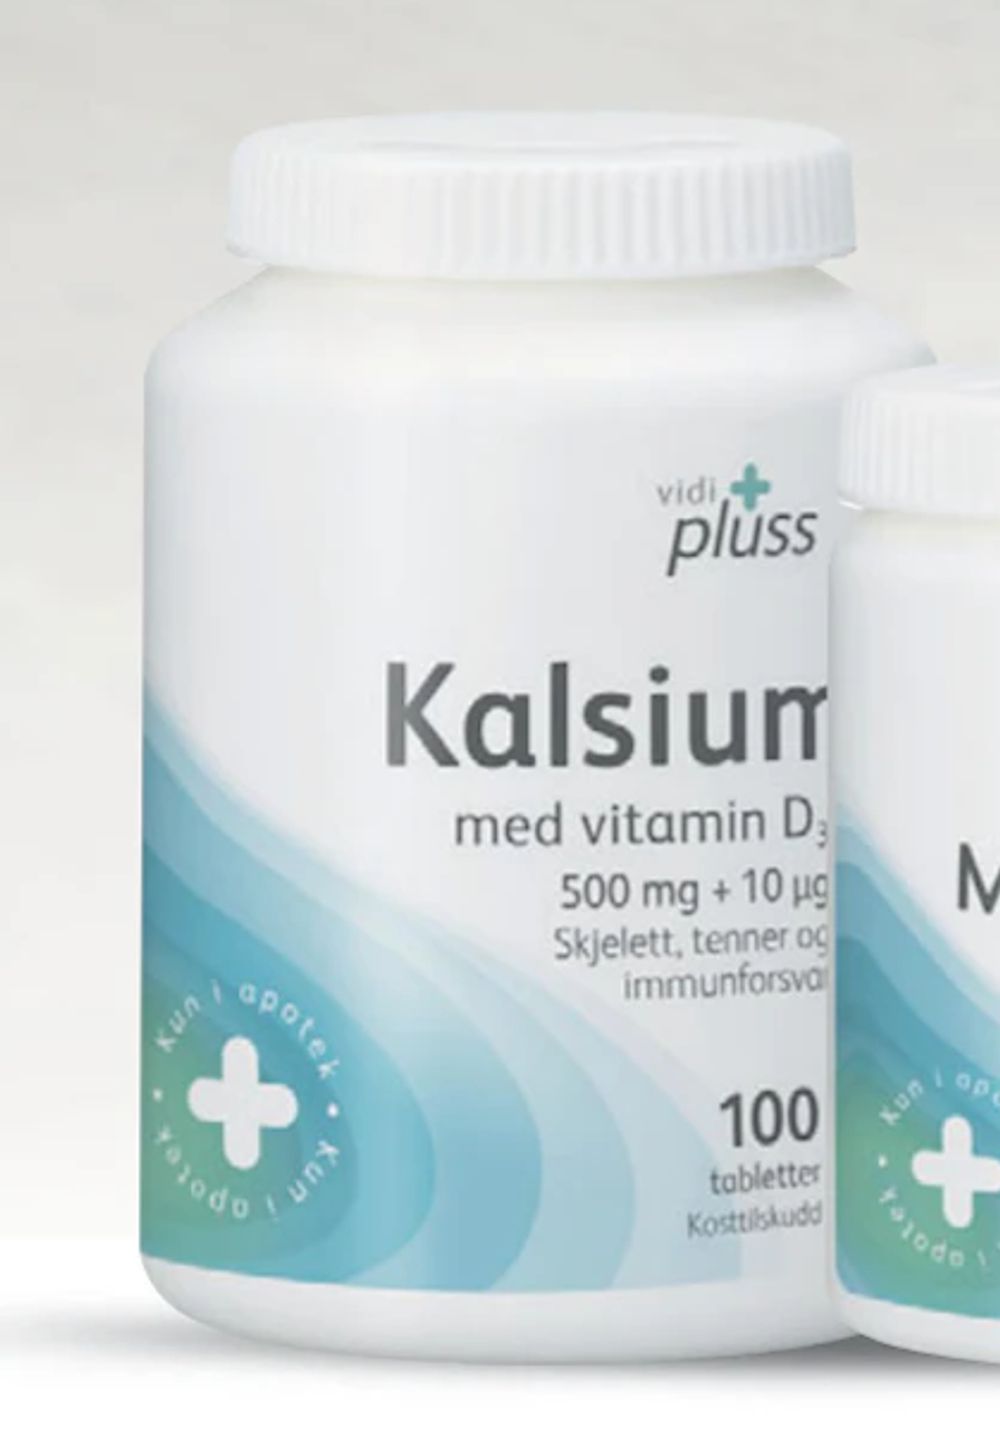 Tilbud på Vidi pluss Kalsium m/D-vit, 100 tabletter fra Vitusapotek til 113,50 kr